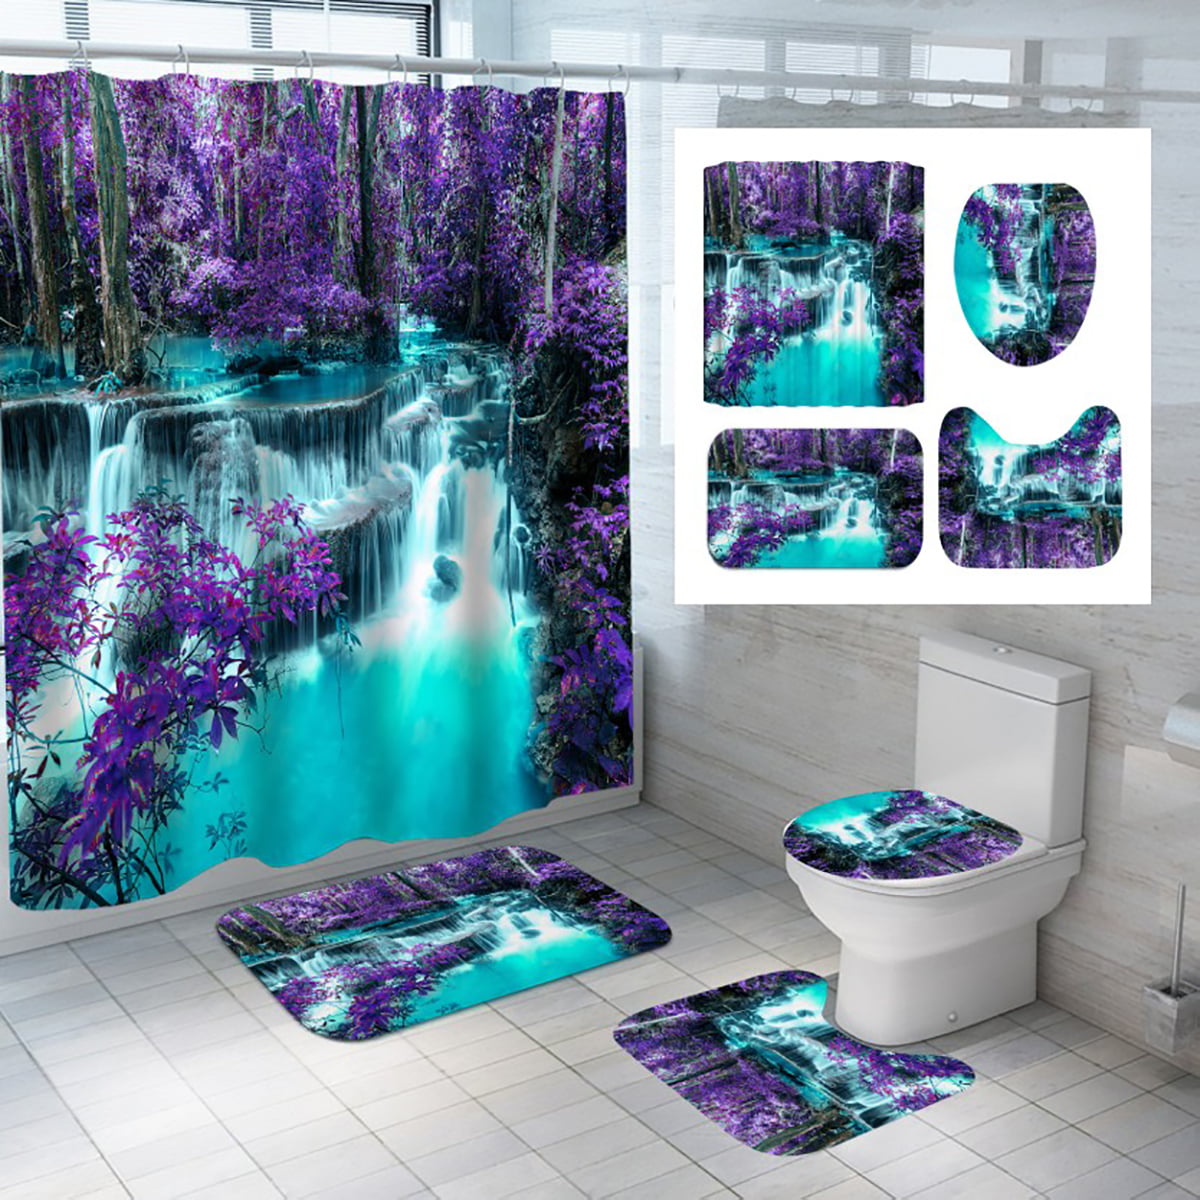 Details about   Landscape Falls Waterproof Shower Curtain Set Bath Mat Lid Cover Bathroom Deco 